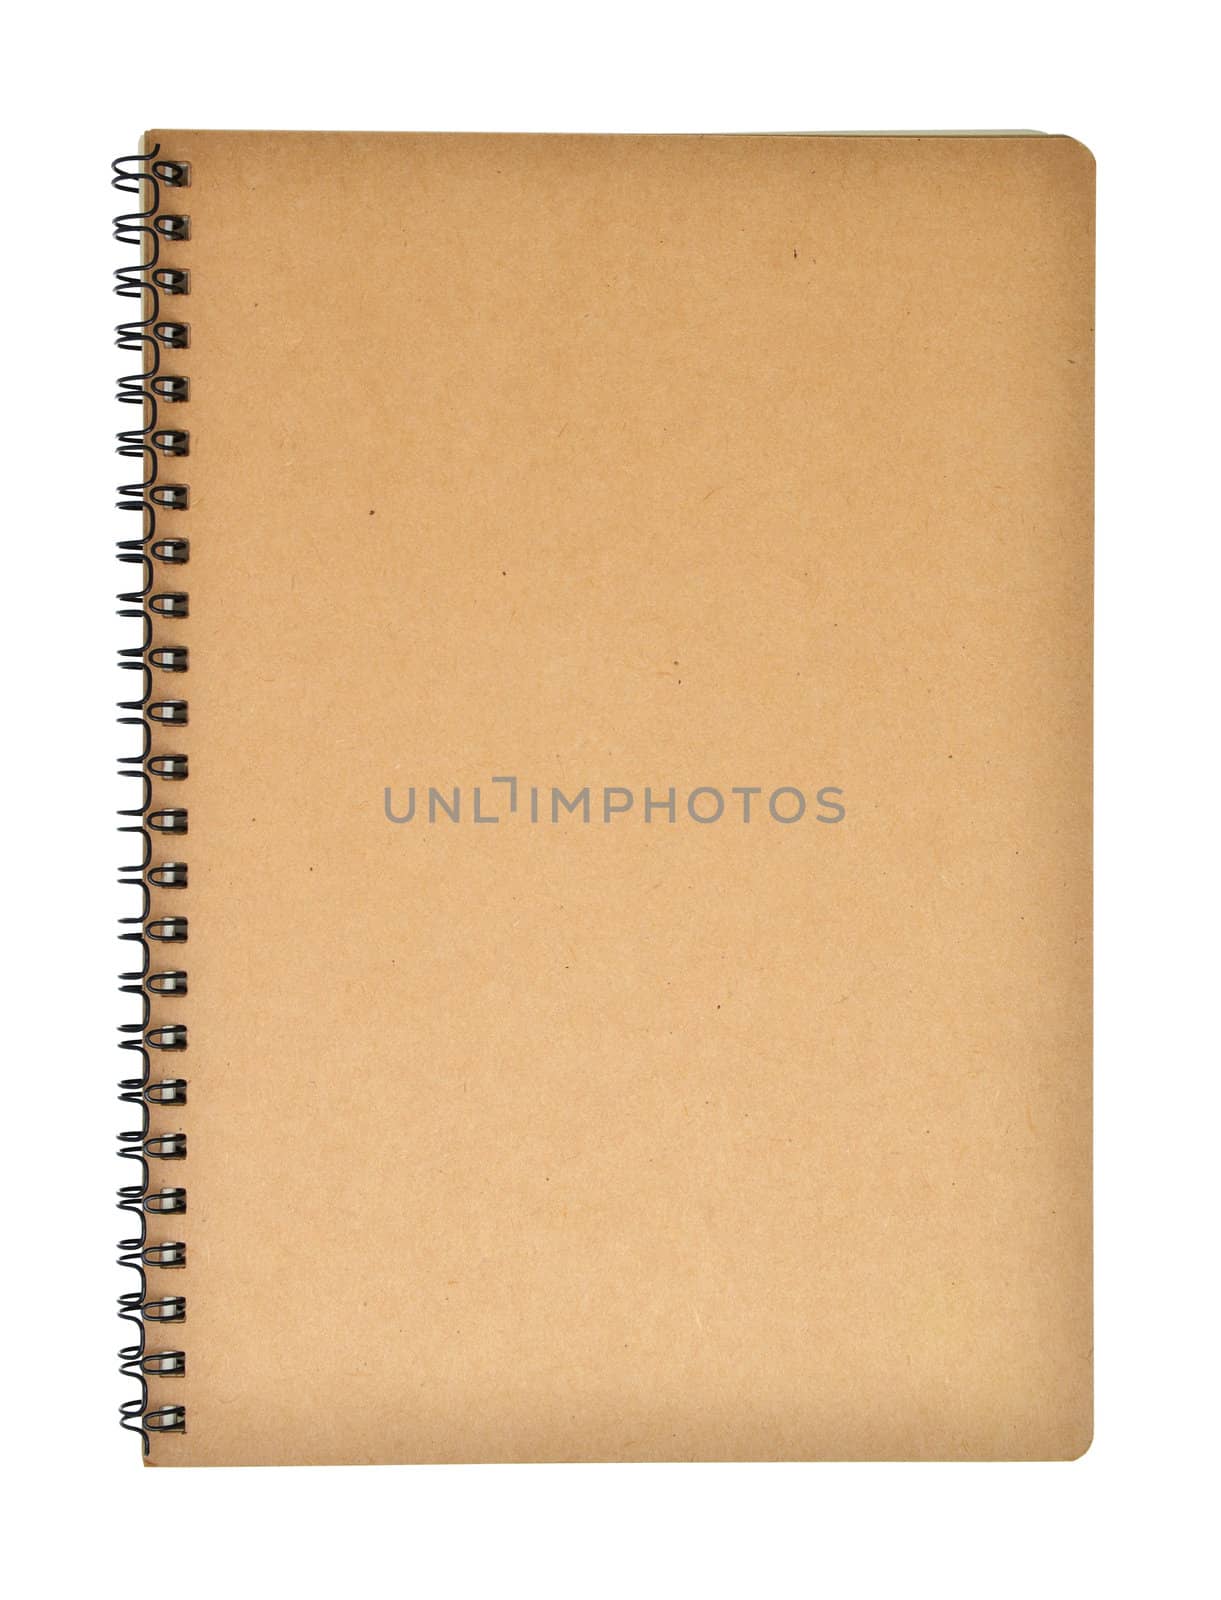 Notebook by antpkr